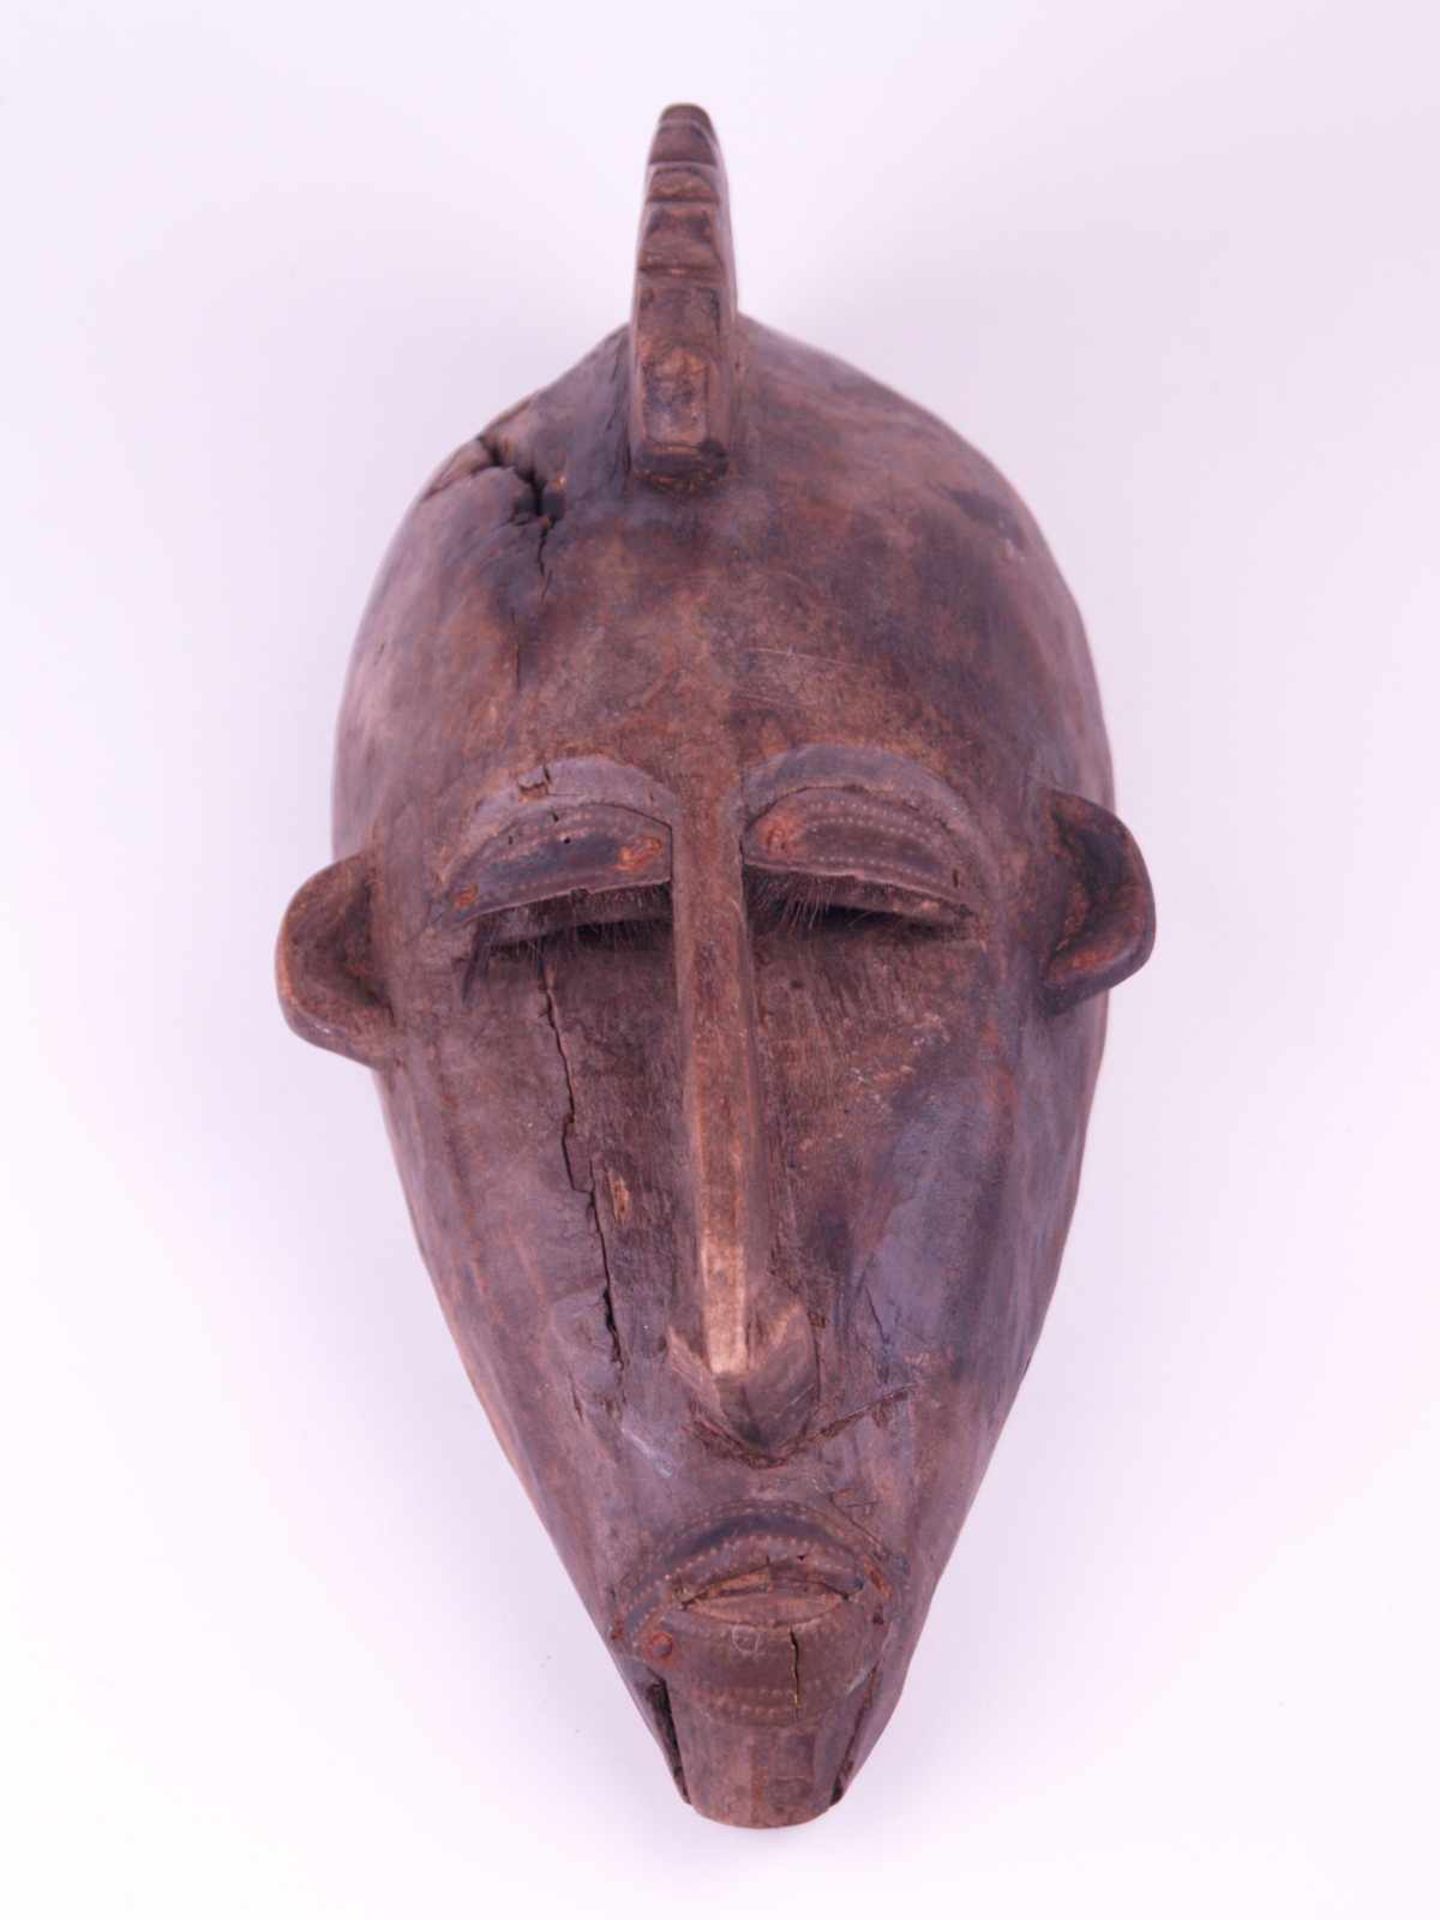 Gesichtsmaske - Mali,Bambara oder Marka, Holz geschnitzt mit Metallbeschlag an Lippen und